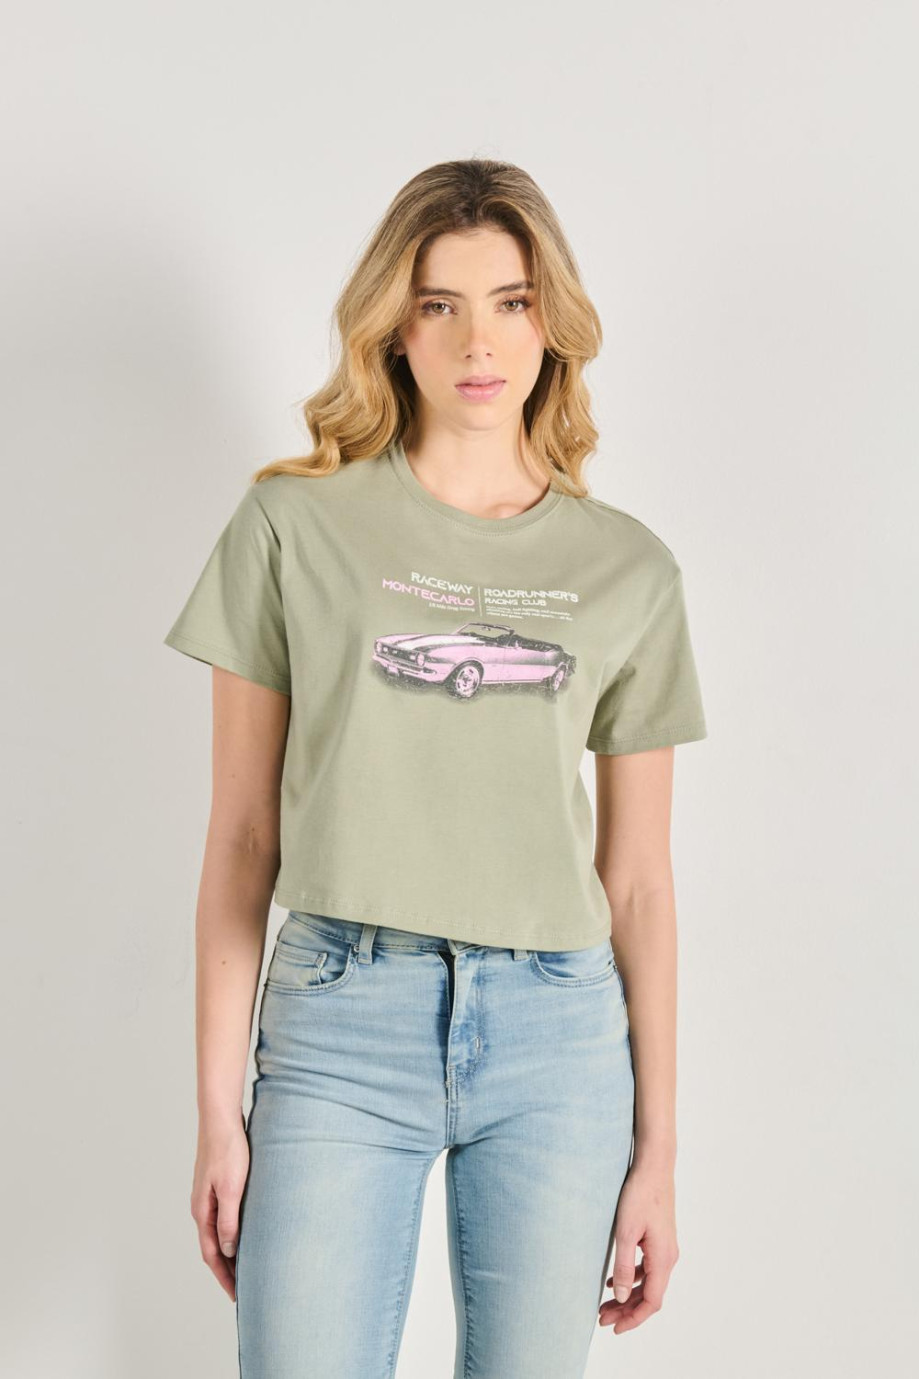 Camiseta crop top unicolor en algodón con estampado racer